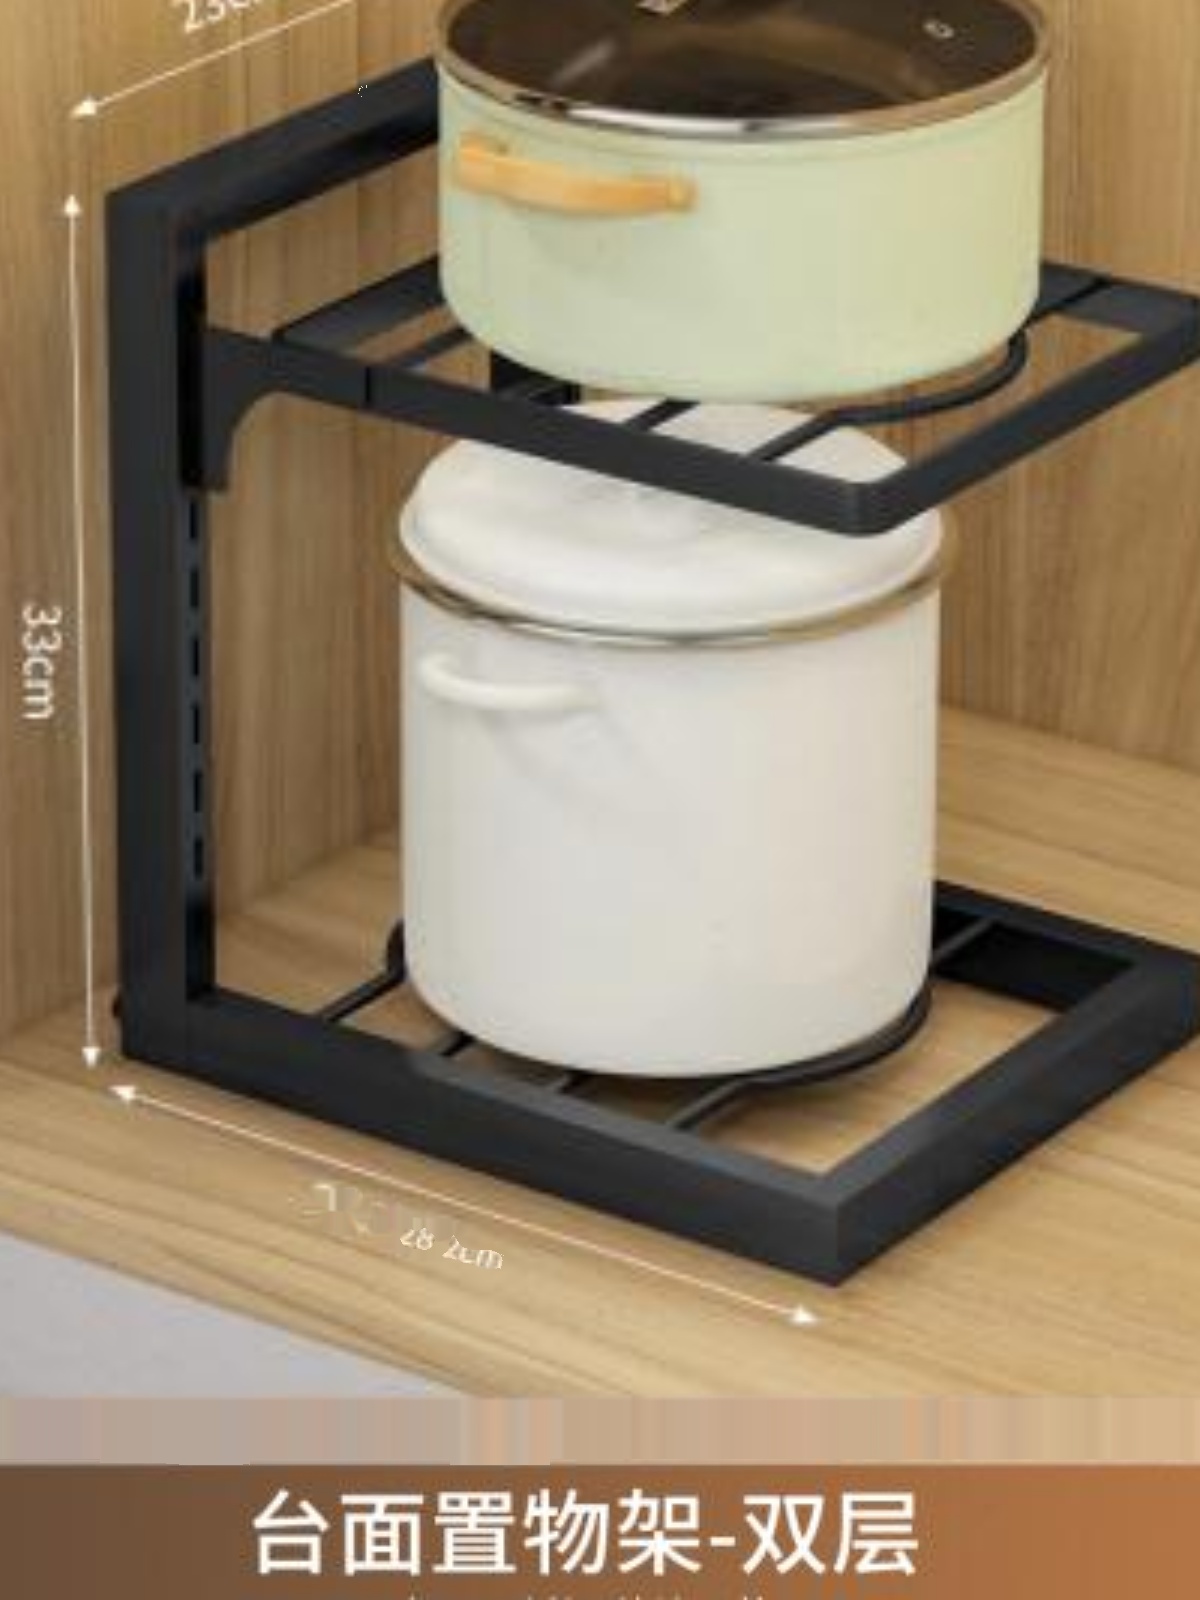 新品厨房多层置物架家用拐角收纳架橱柜内下水槽锅具可调节分层放